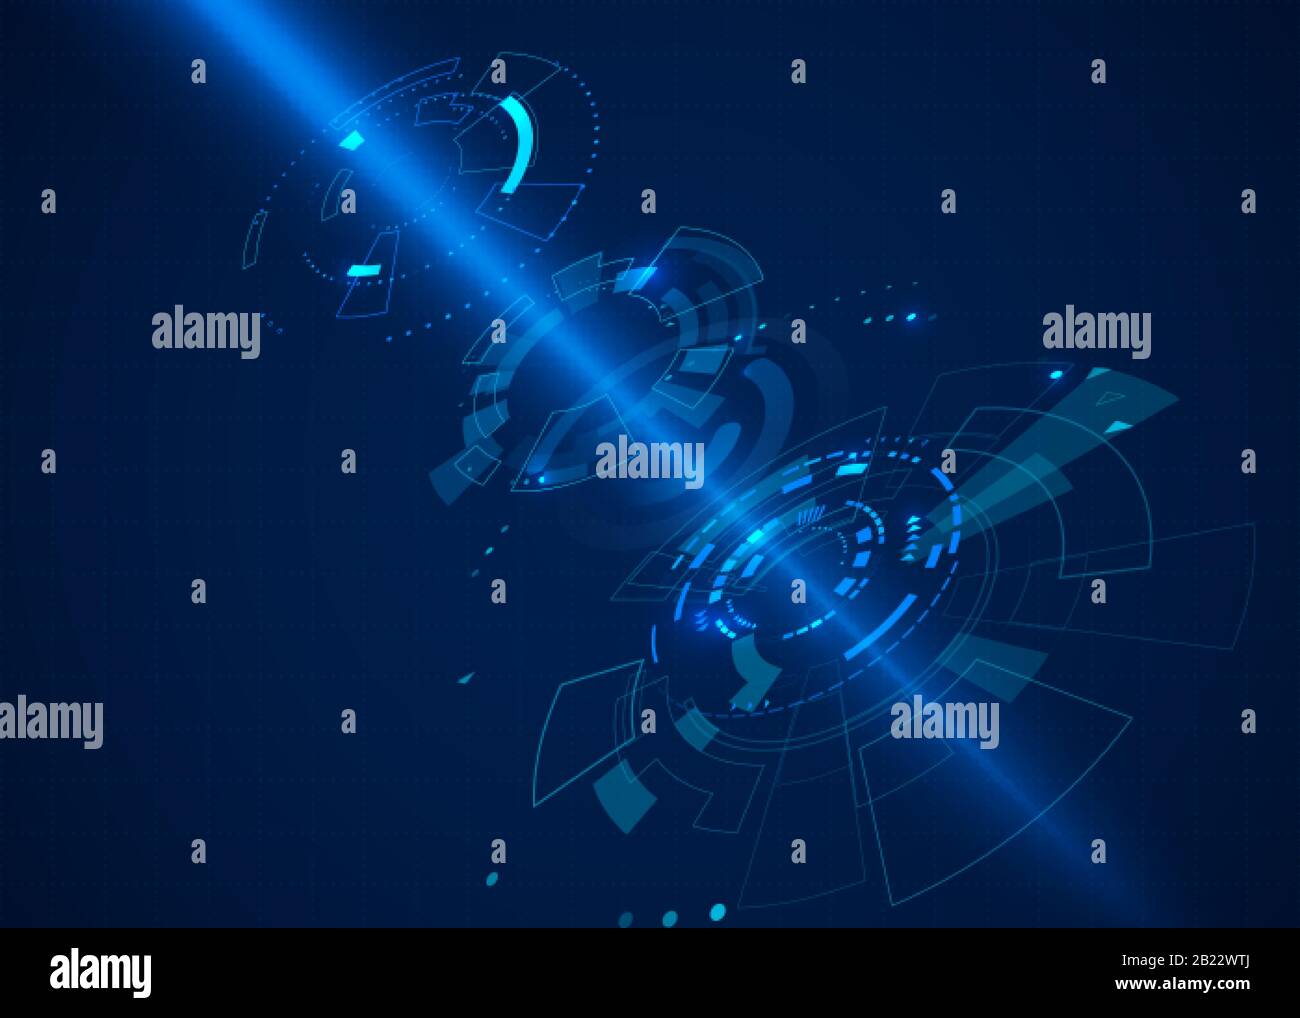 SCI FI abstrakter Cyberspace Hintergrund mit Lichtstrahl. Futuristisches Technologiekonzept mit HUD-Elementen. Vektordarstellung Stock Vektor